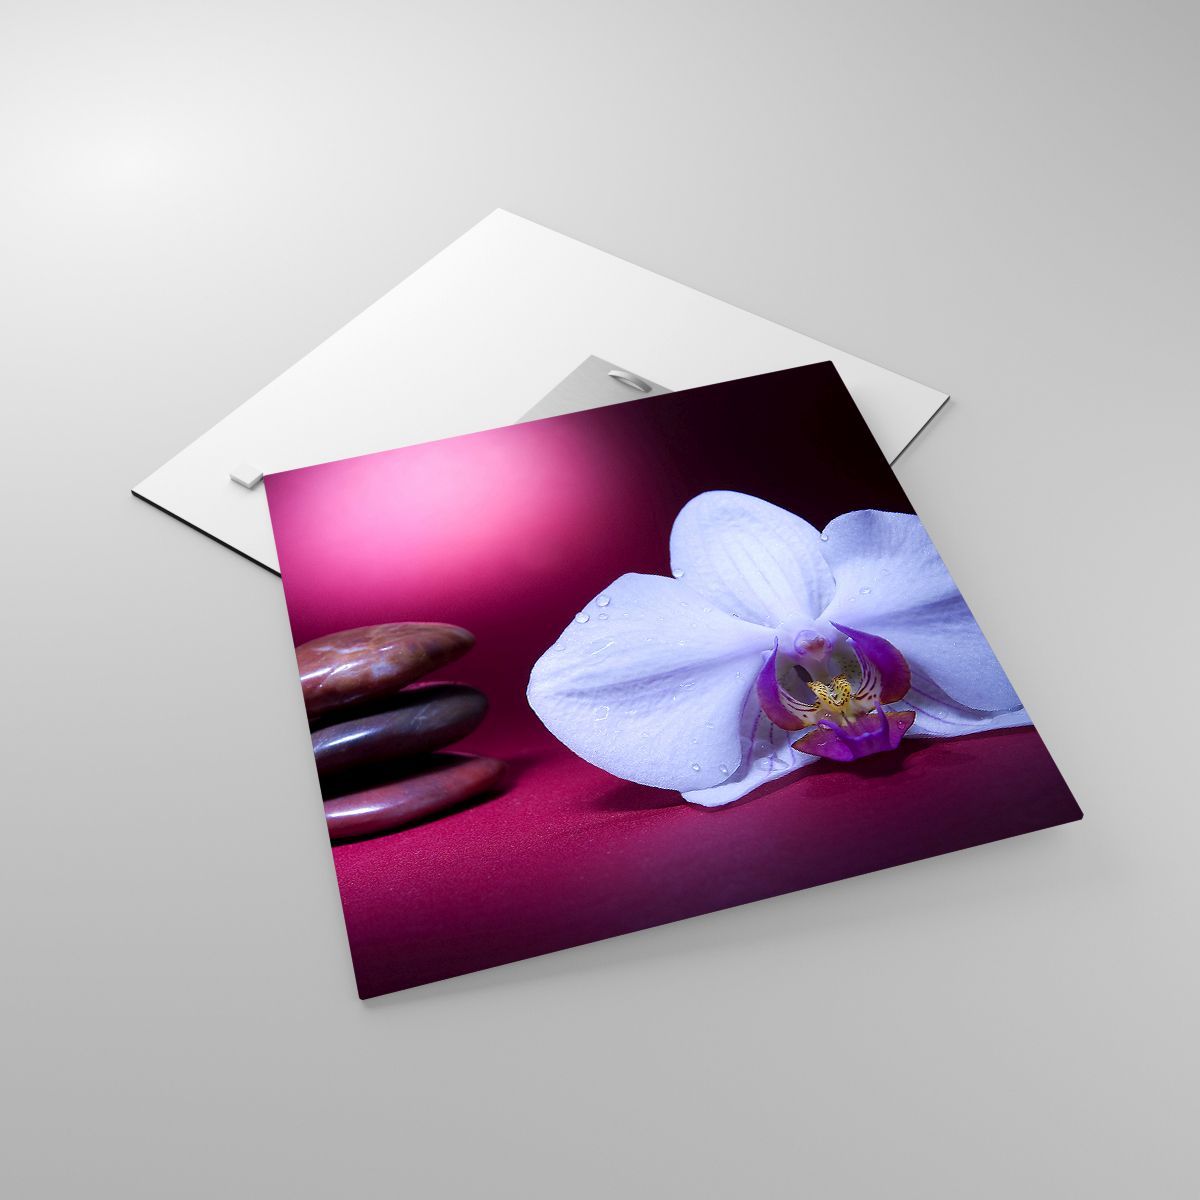 Glasbild Blumen, Glasbild  Spa, Glasbild Steine, Glasbild Orchidee, Glasbild Entspannung